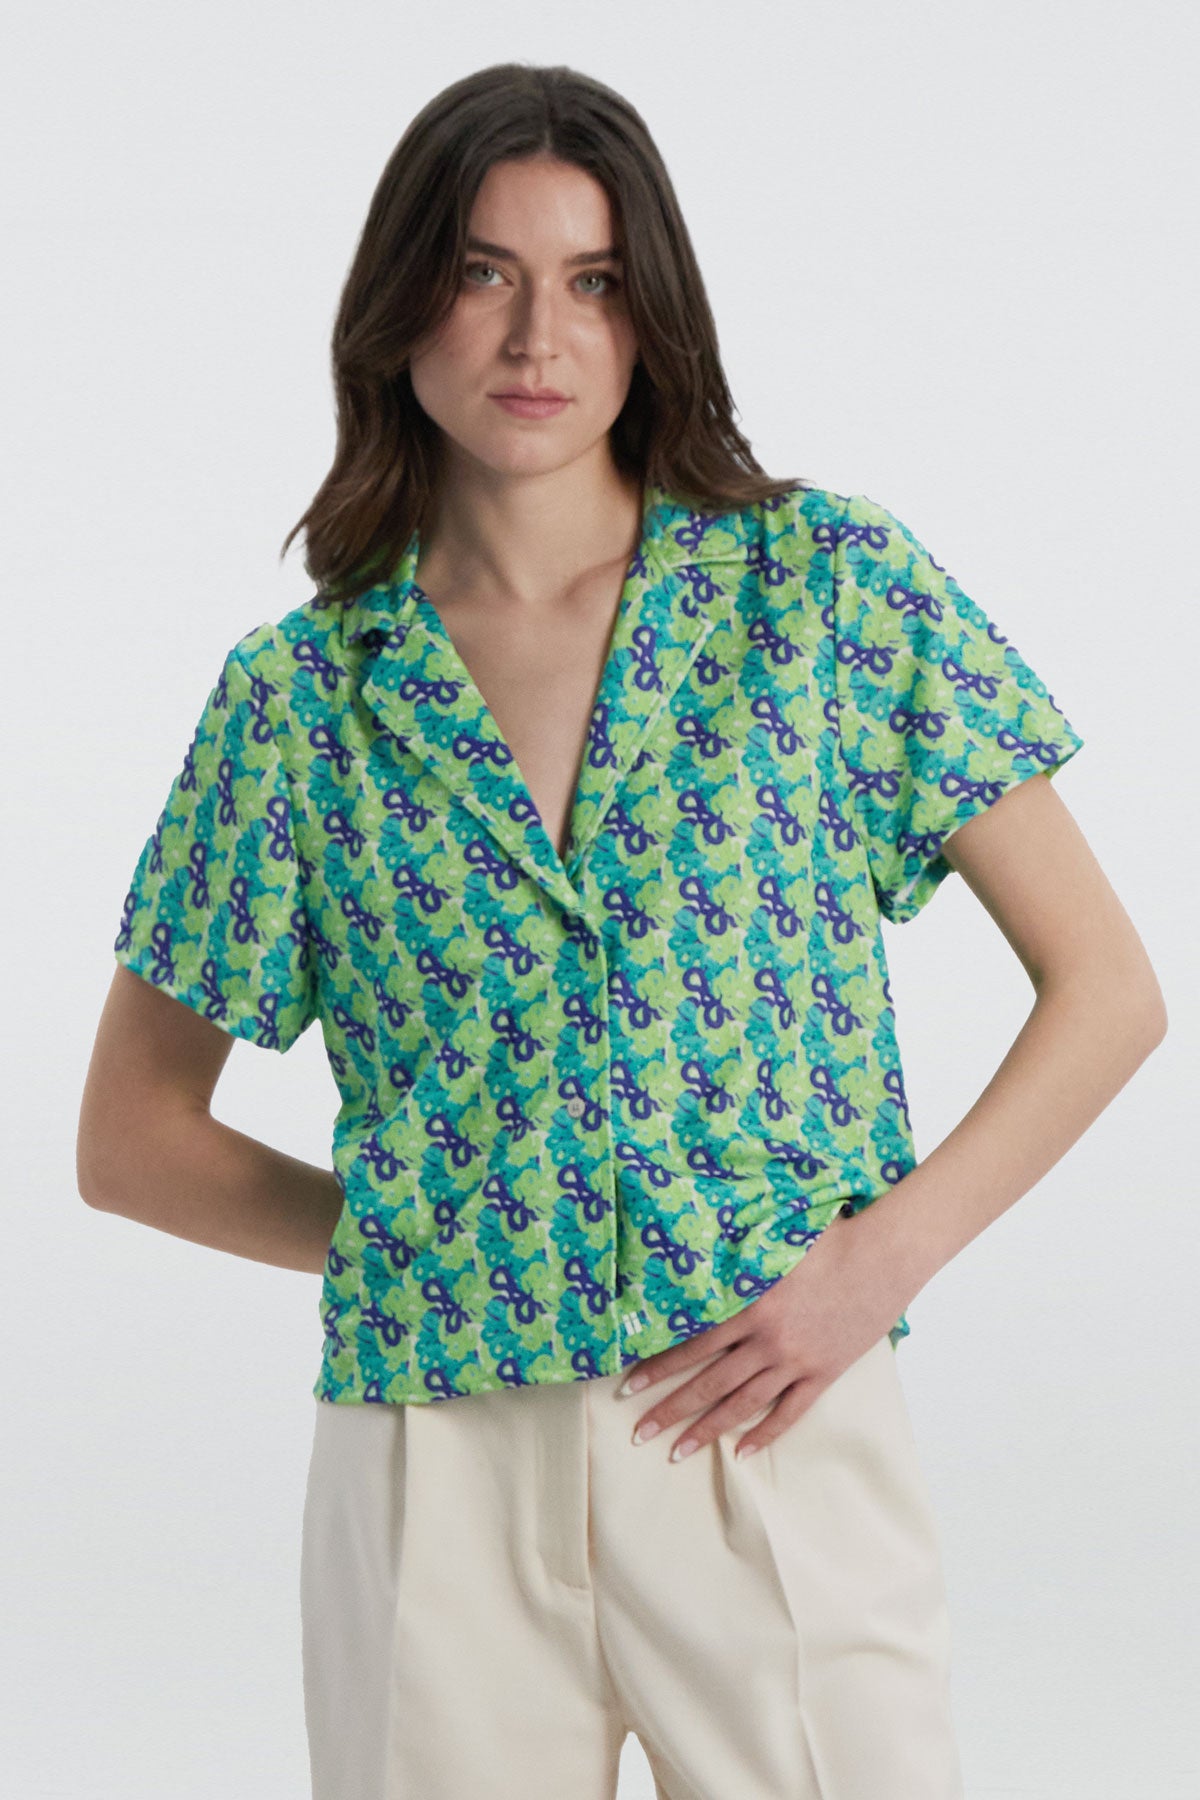 Camisa manga corta con estampado cascada de Sepiia, fresca y elegante, perfecta para el verano. Foto frente